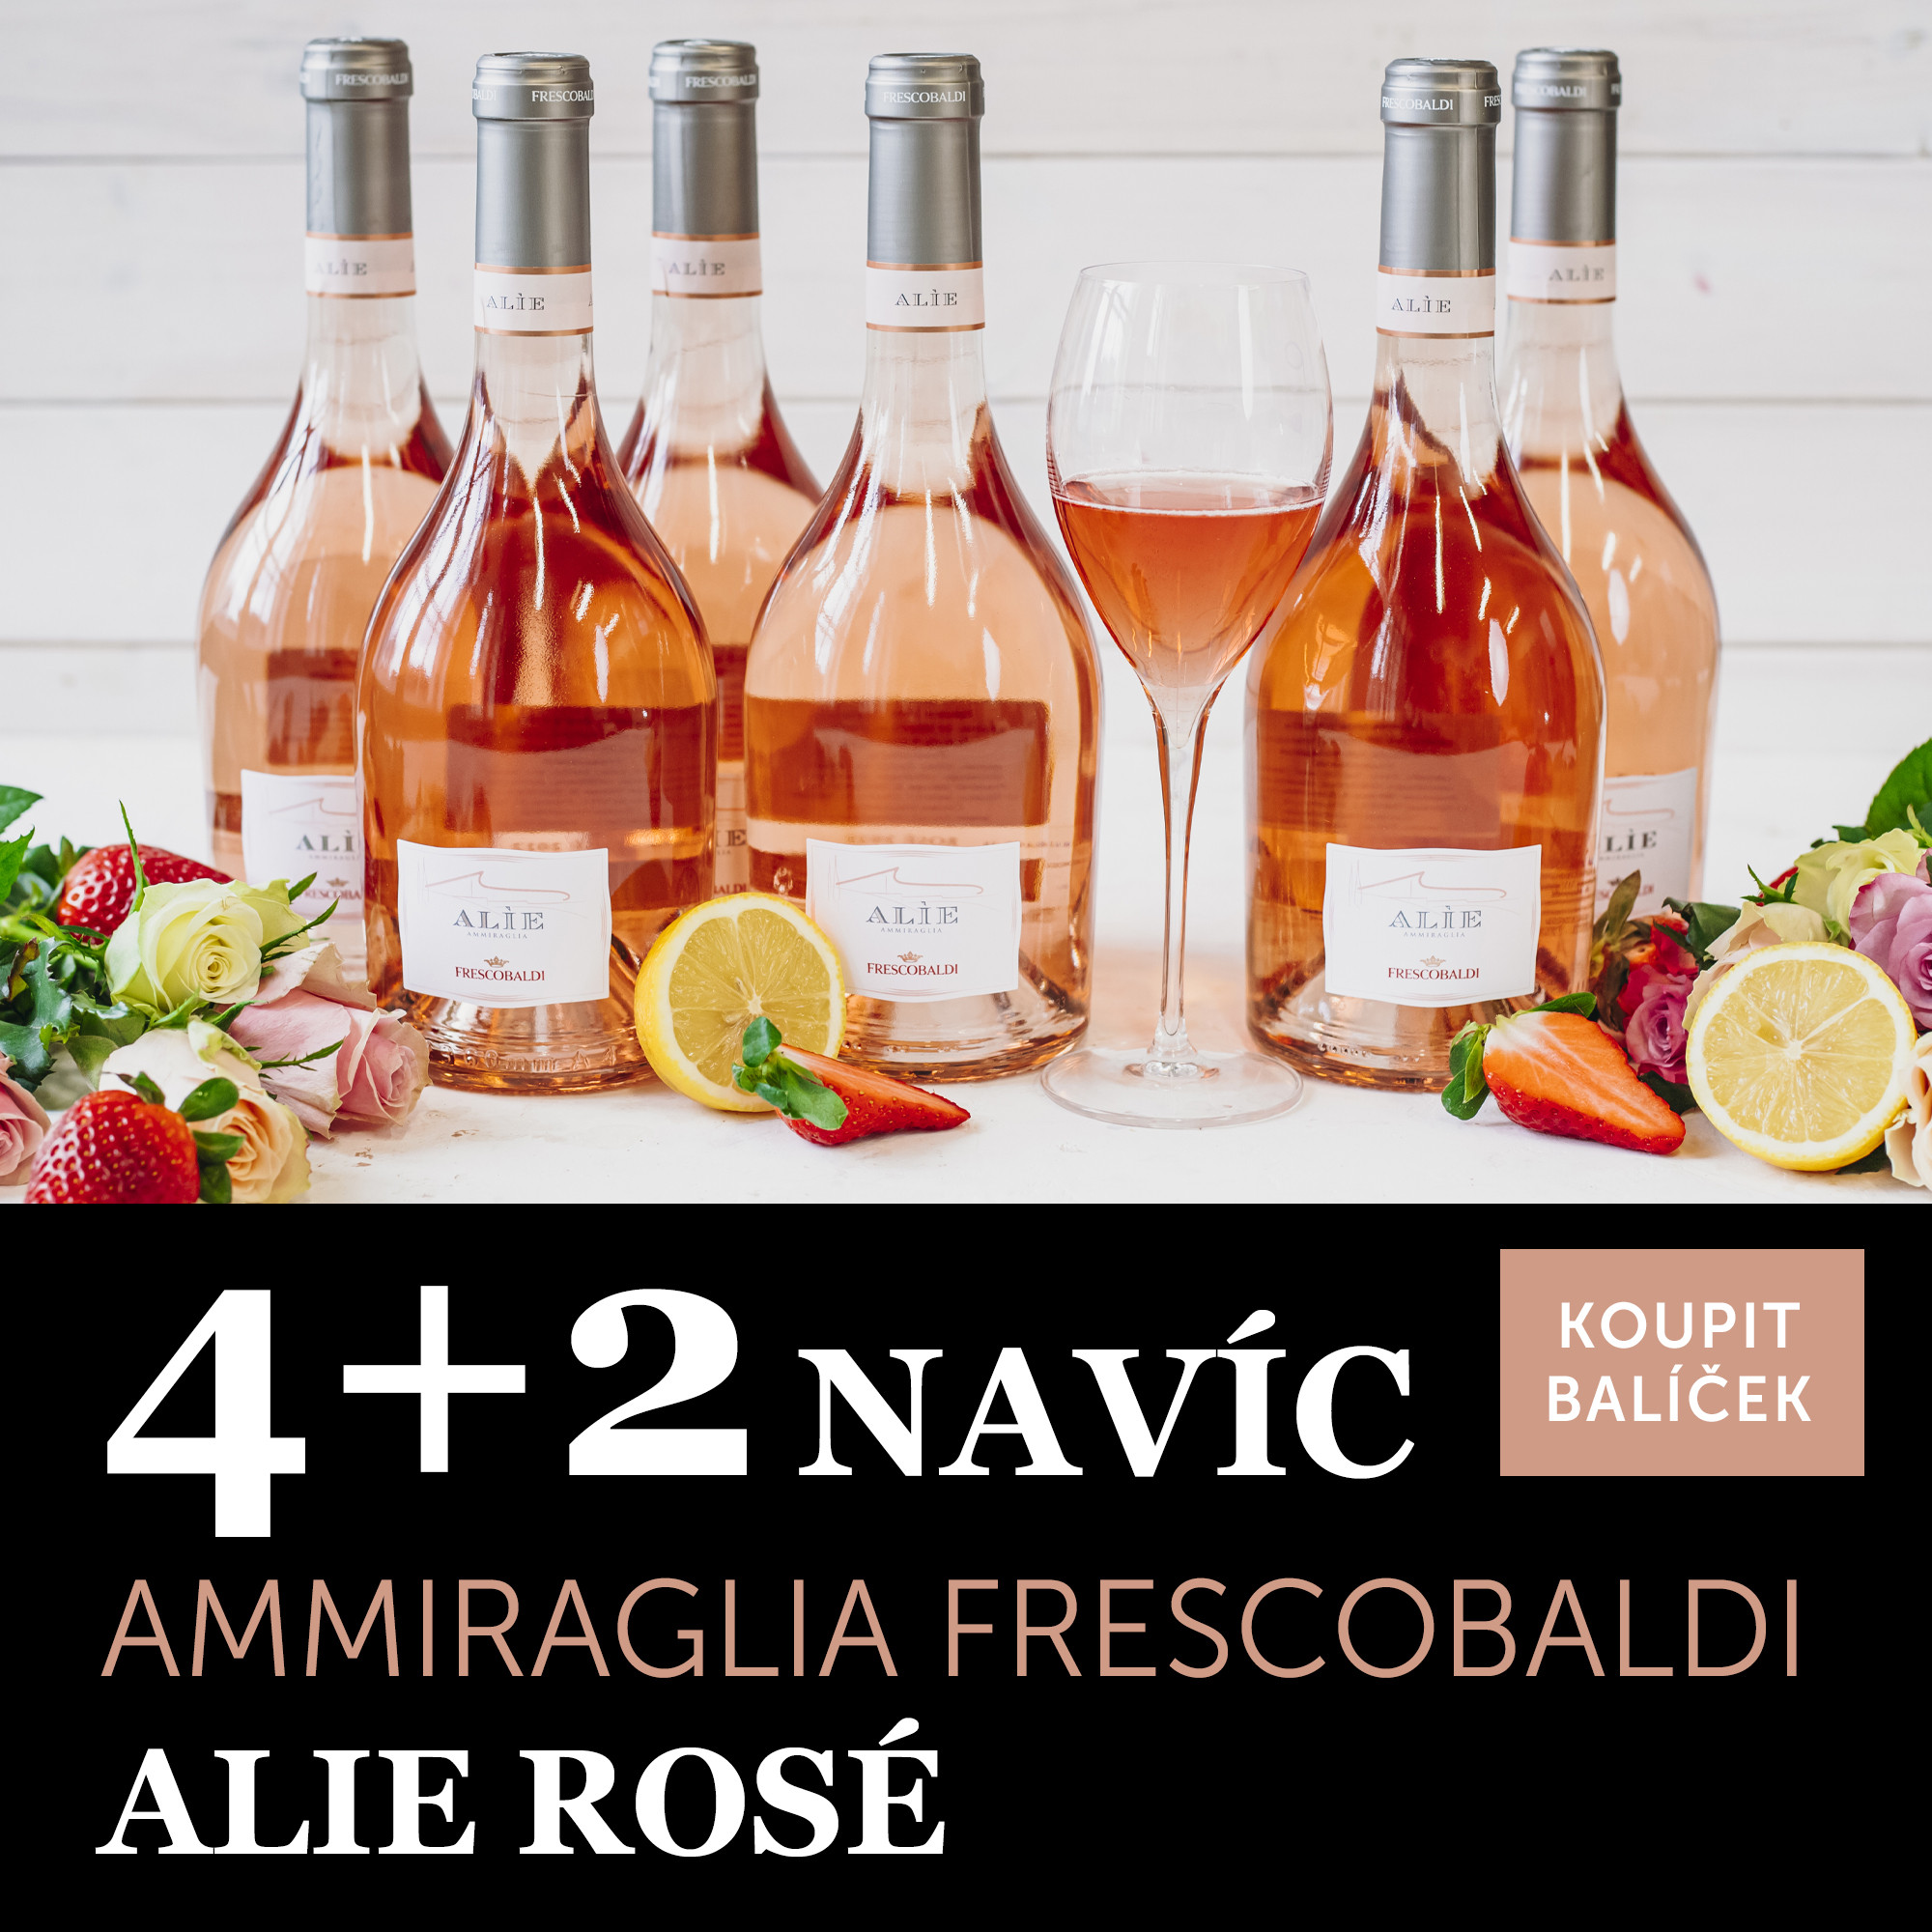 Víno měsíce února - Ammiraglia Alie rosé 2022 IGT 4+2 navíc